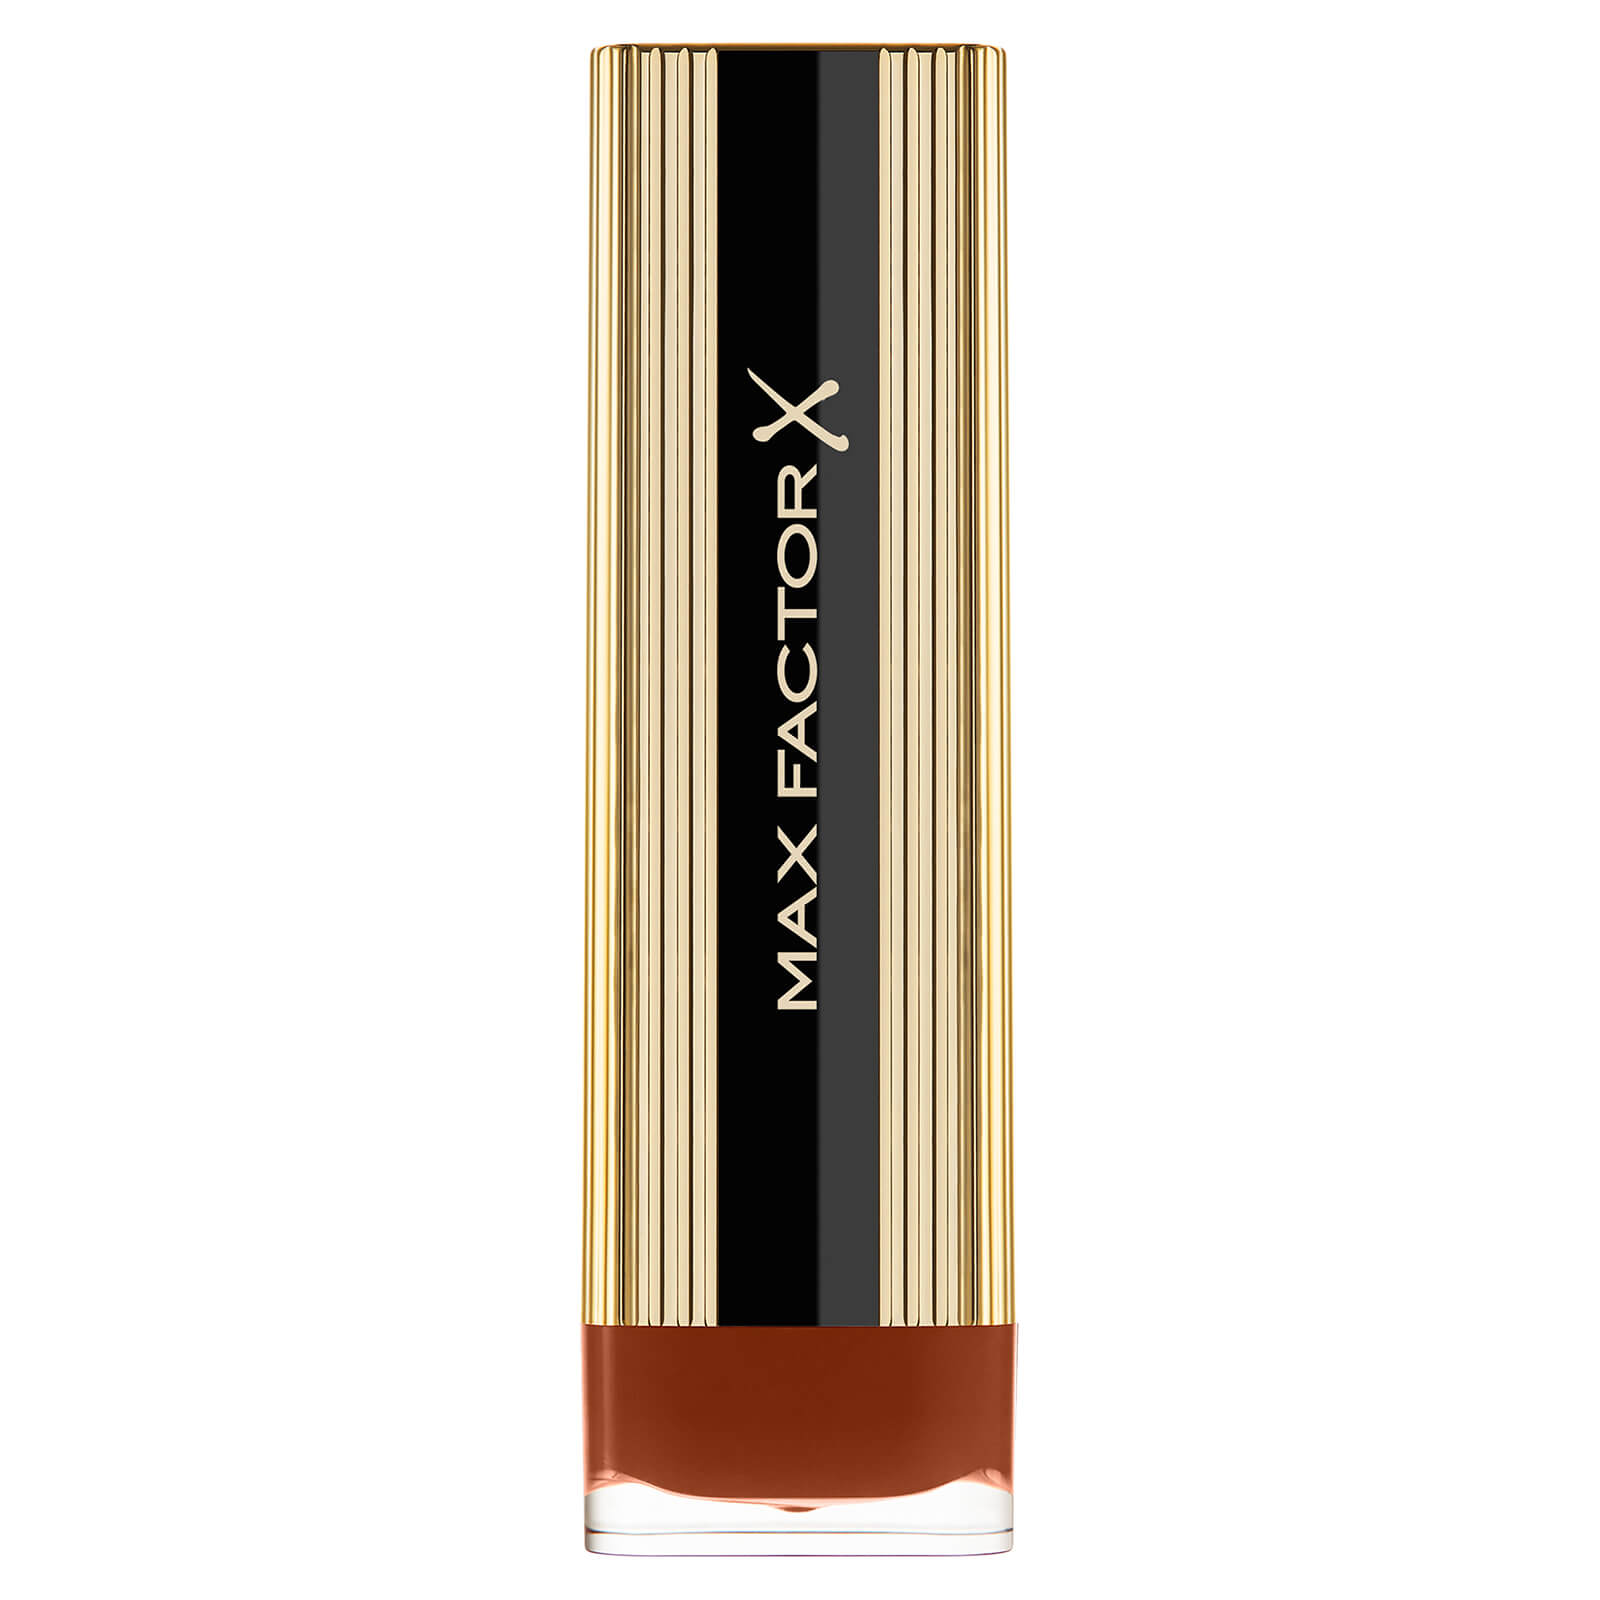 Max Factor Colour Elixir Lipstick with Vitamin E 4g (Various Shades) - 140 Rich Mocha